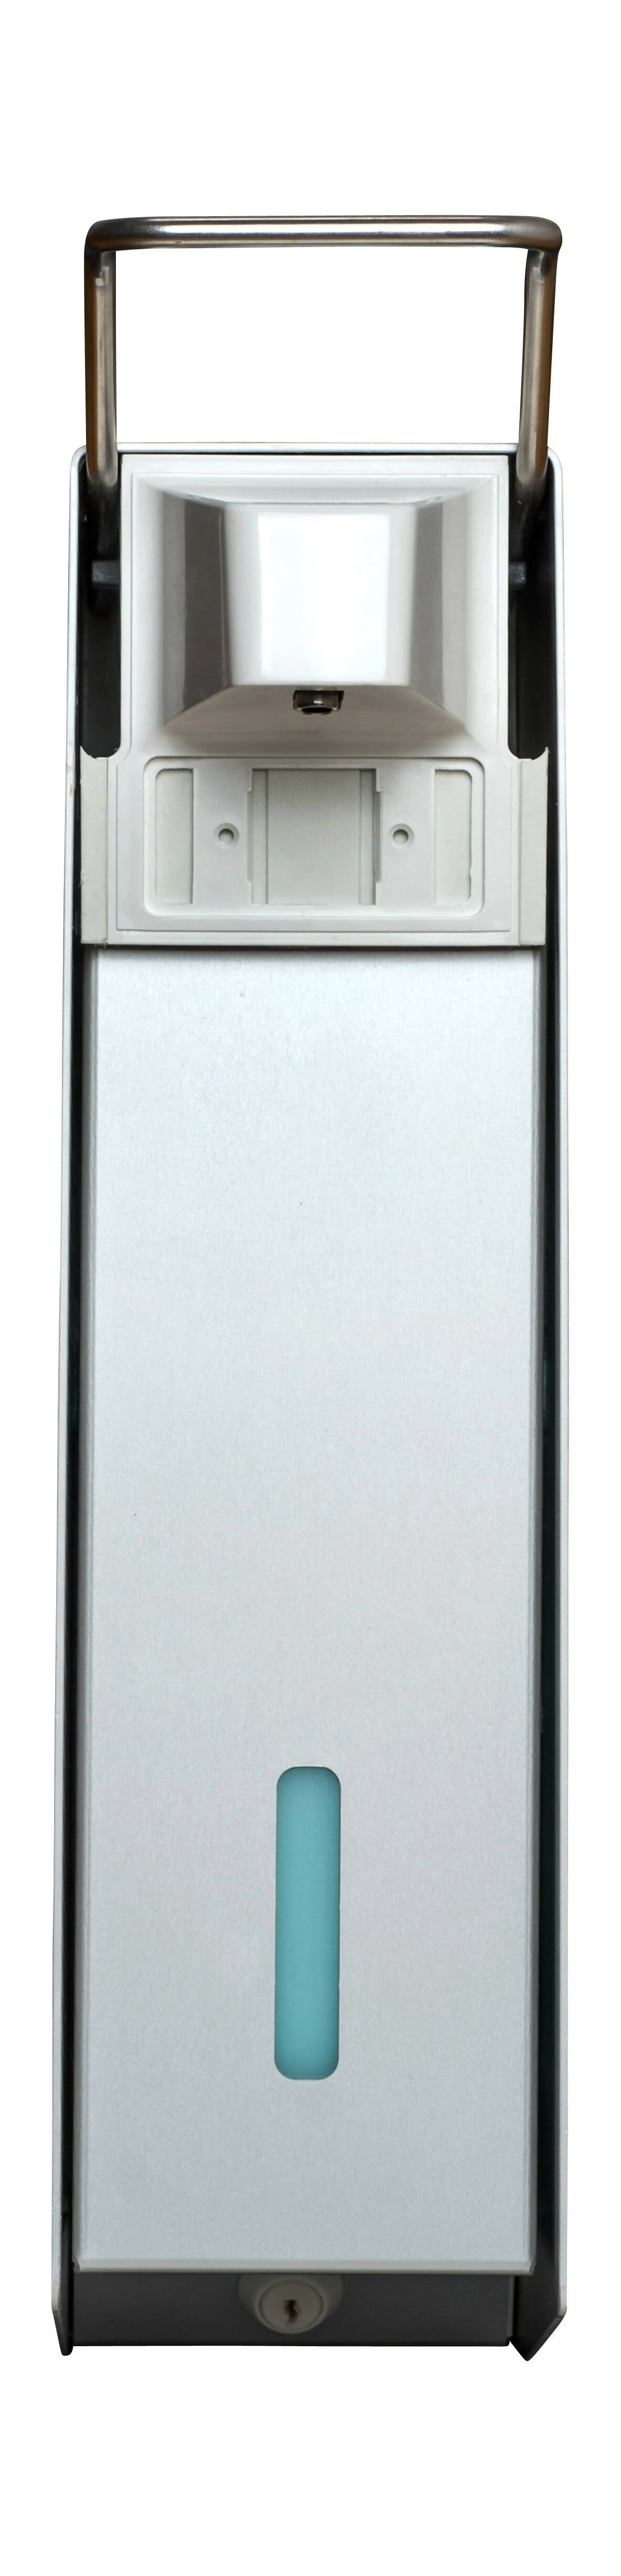 SORIFA - 5er-Set - Robuster, ergonomischer, abschließbarer Wandspender aus Metall für 2,5L-Flasche der Marke SORIFA - Für Gele und Flüssigseifen.